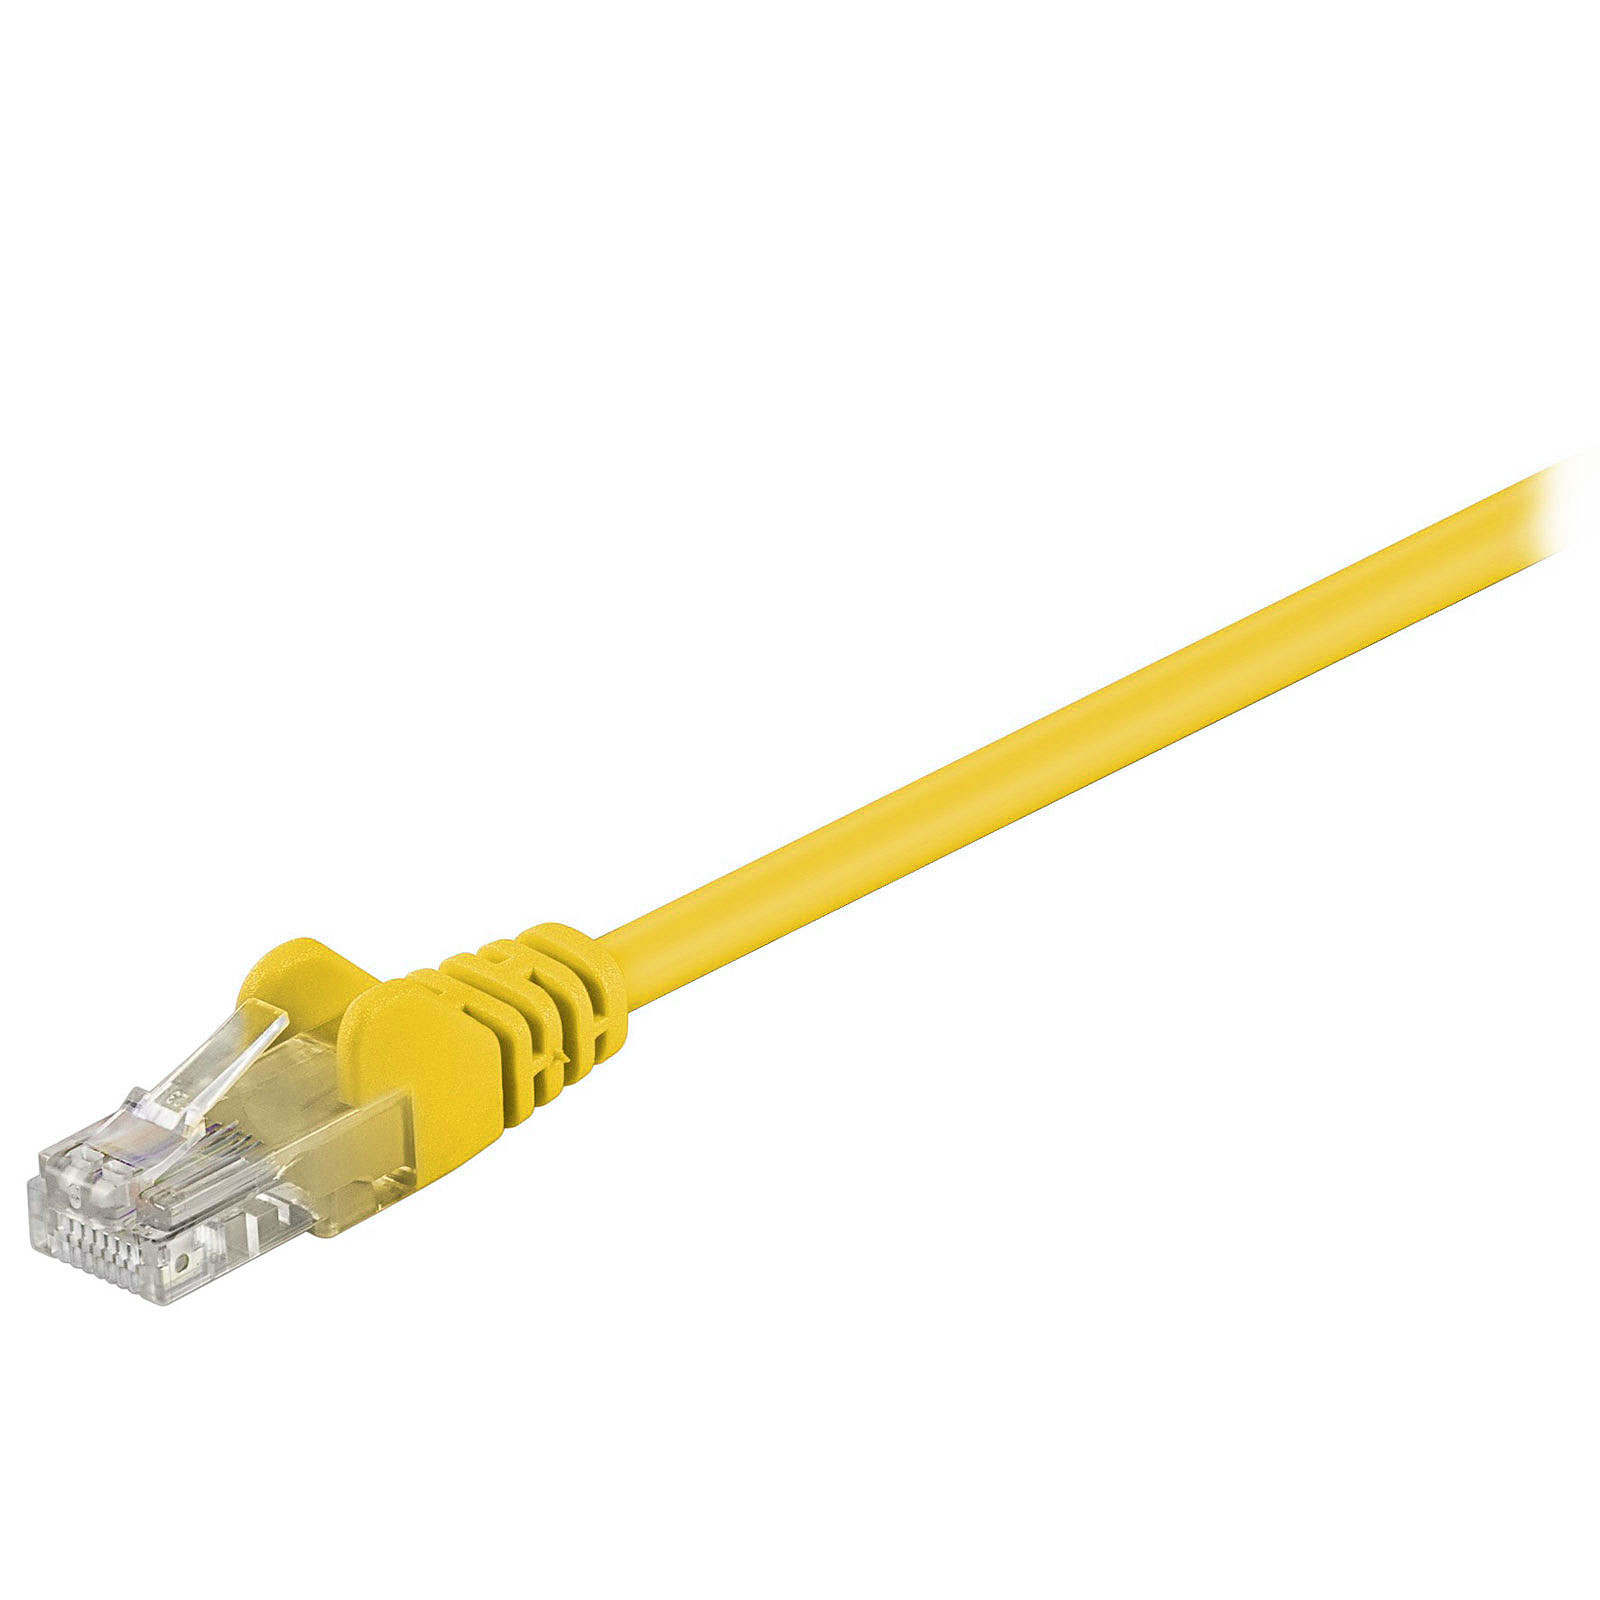 Cable RJ45 categorie 5e U/UTP 2 m (Jaune) - Cable RJ45 Generique